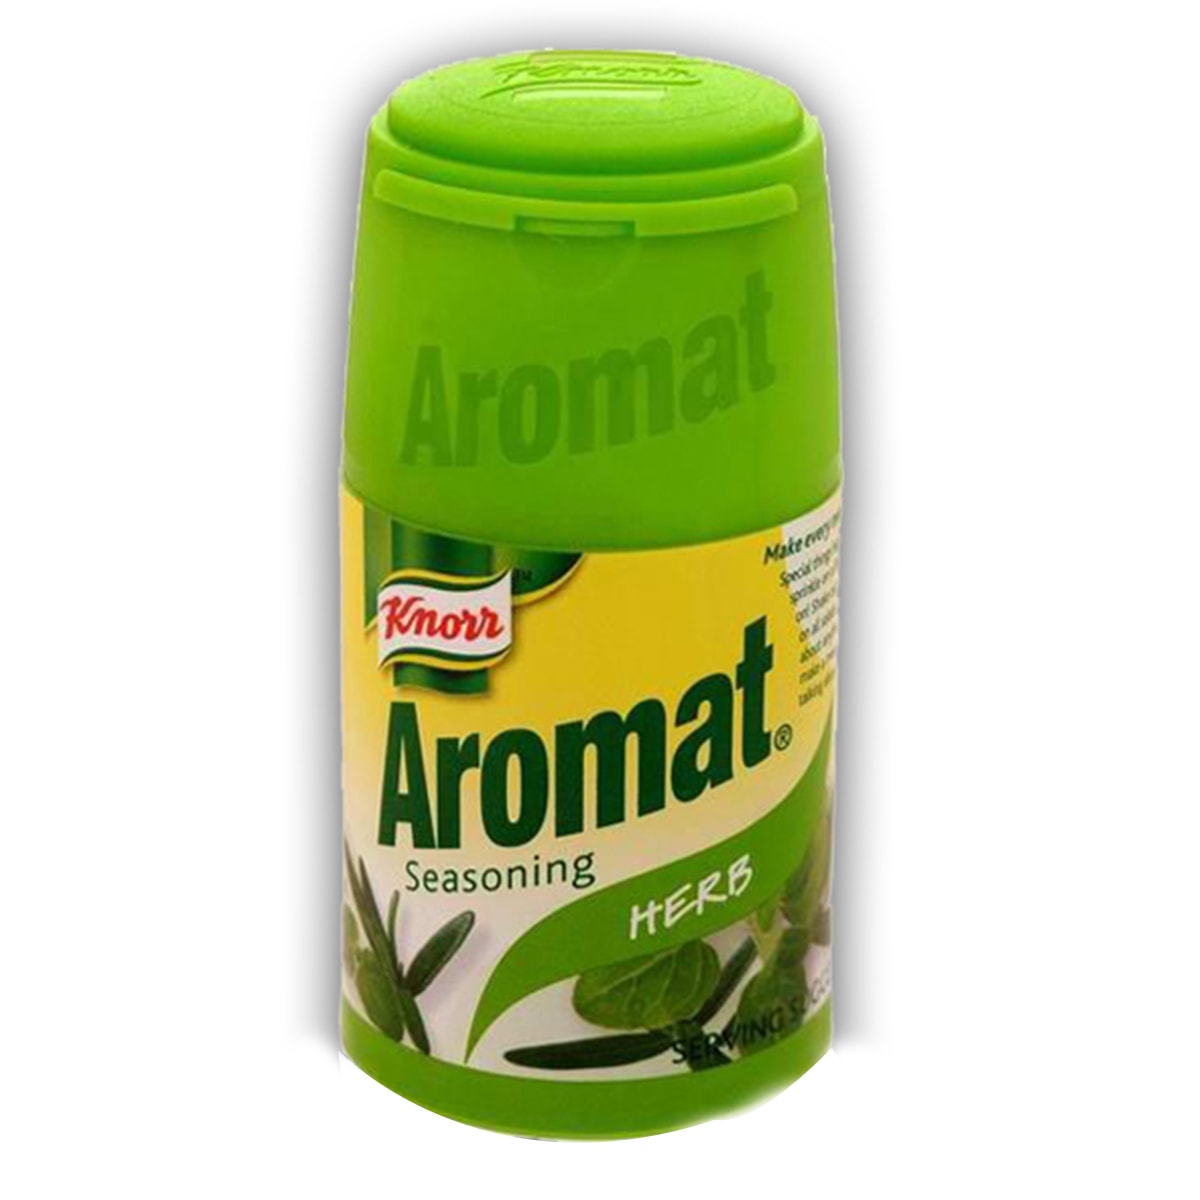 Buy Knorr Aromat Seasoning Herb - 75 gm